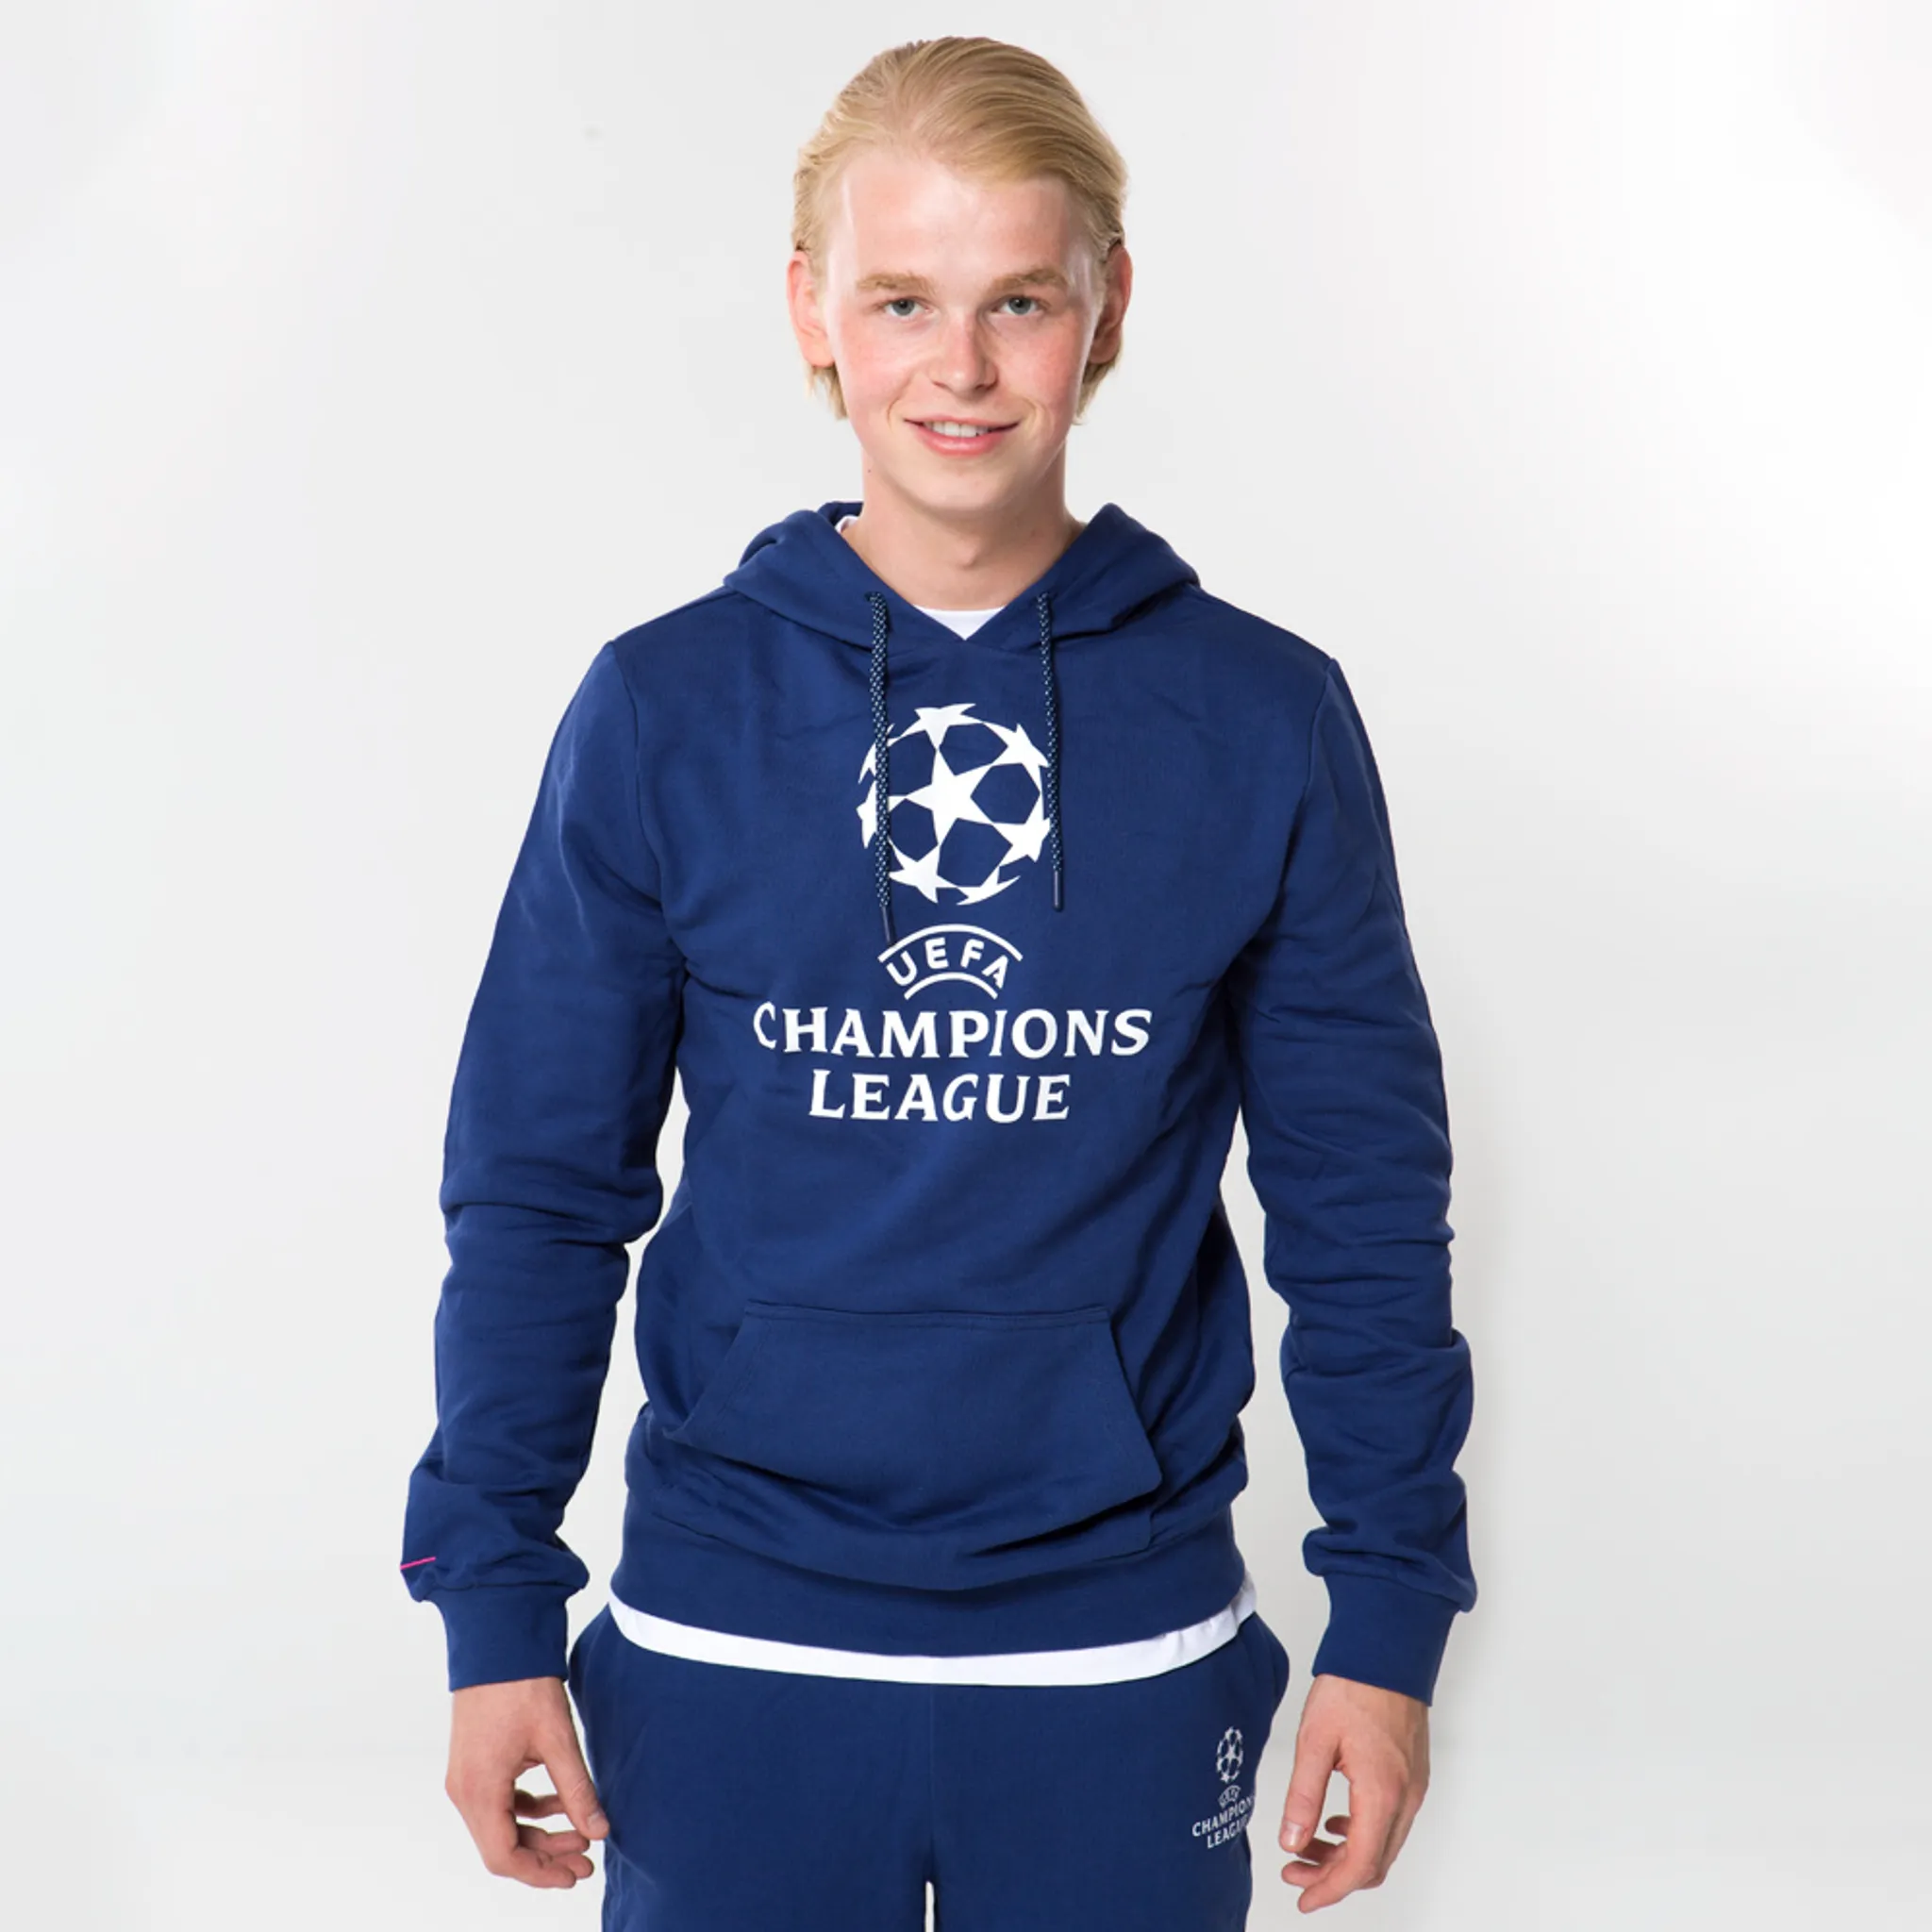 League Champions für hoodie erwachsene logo